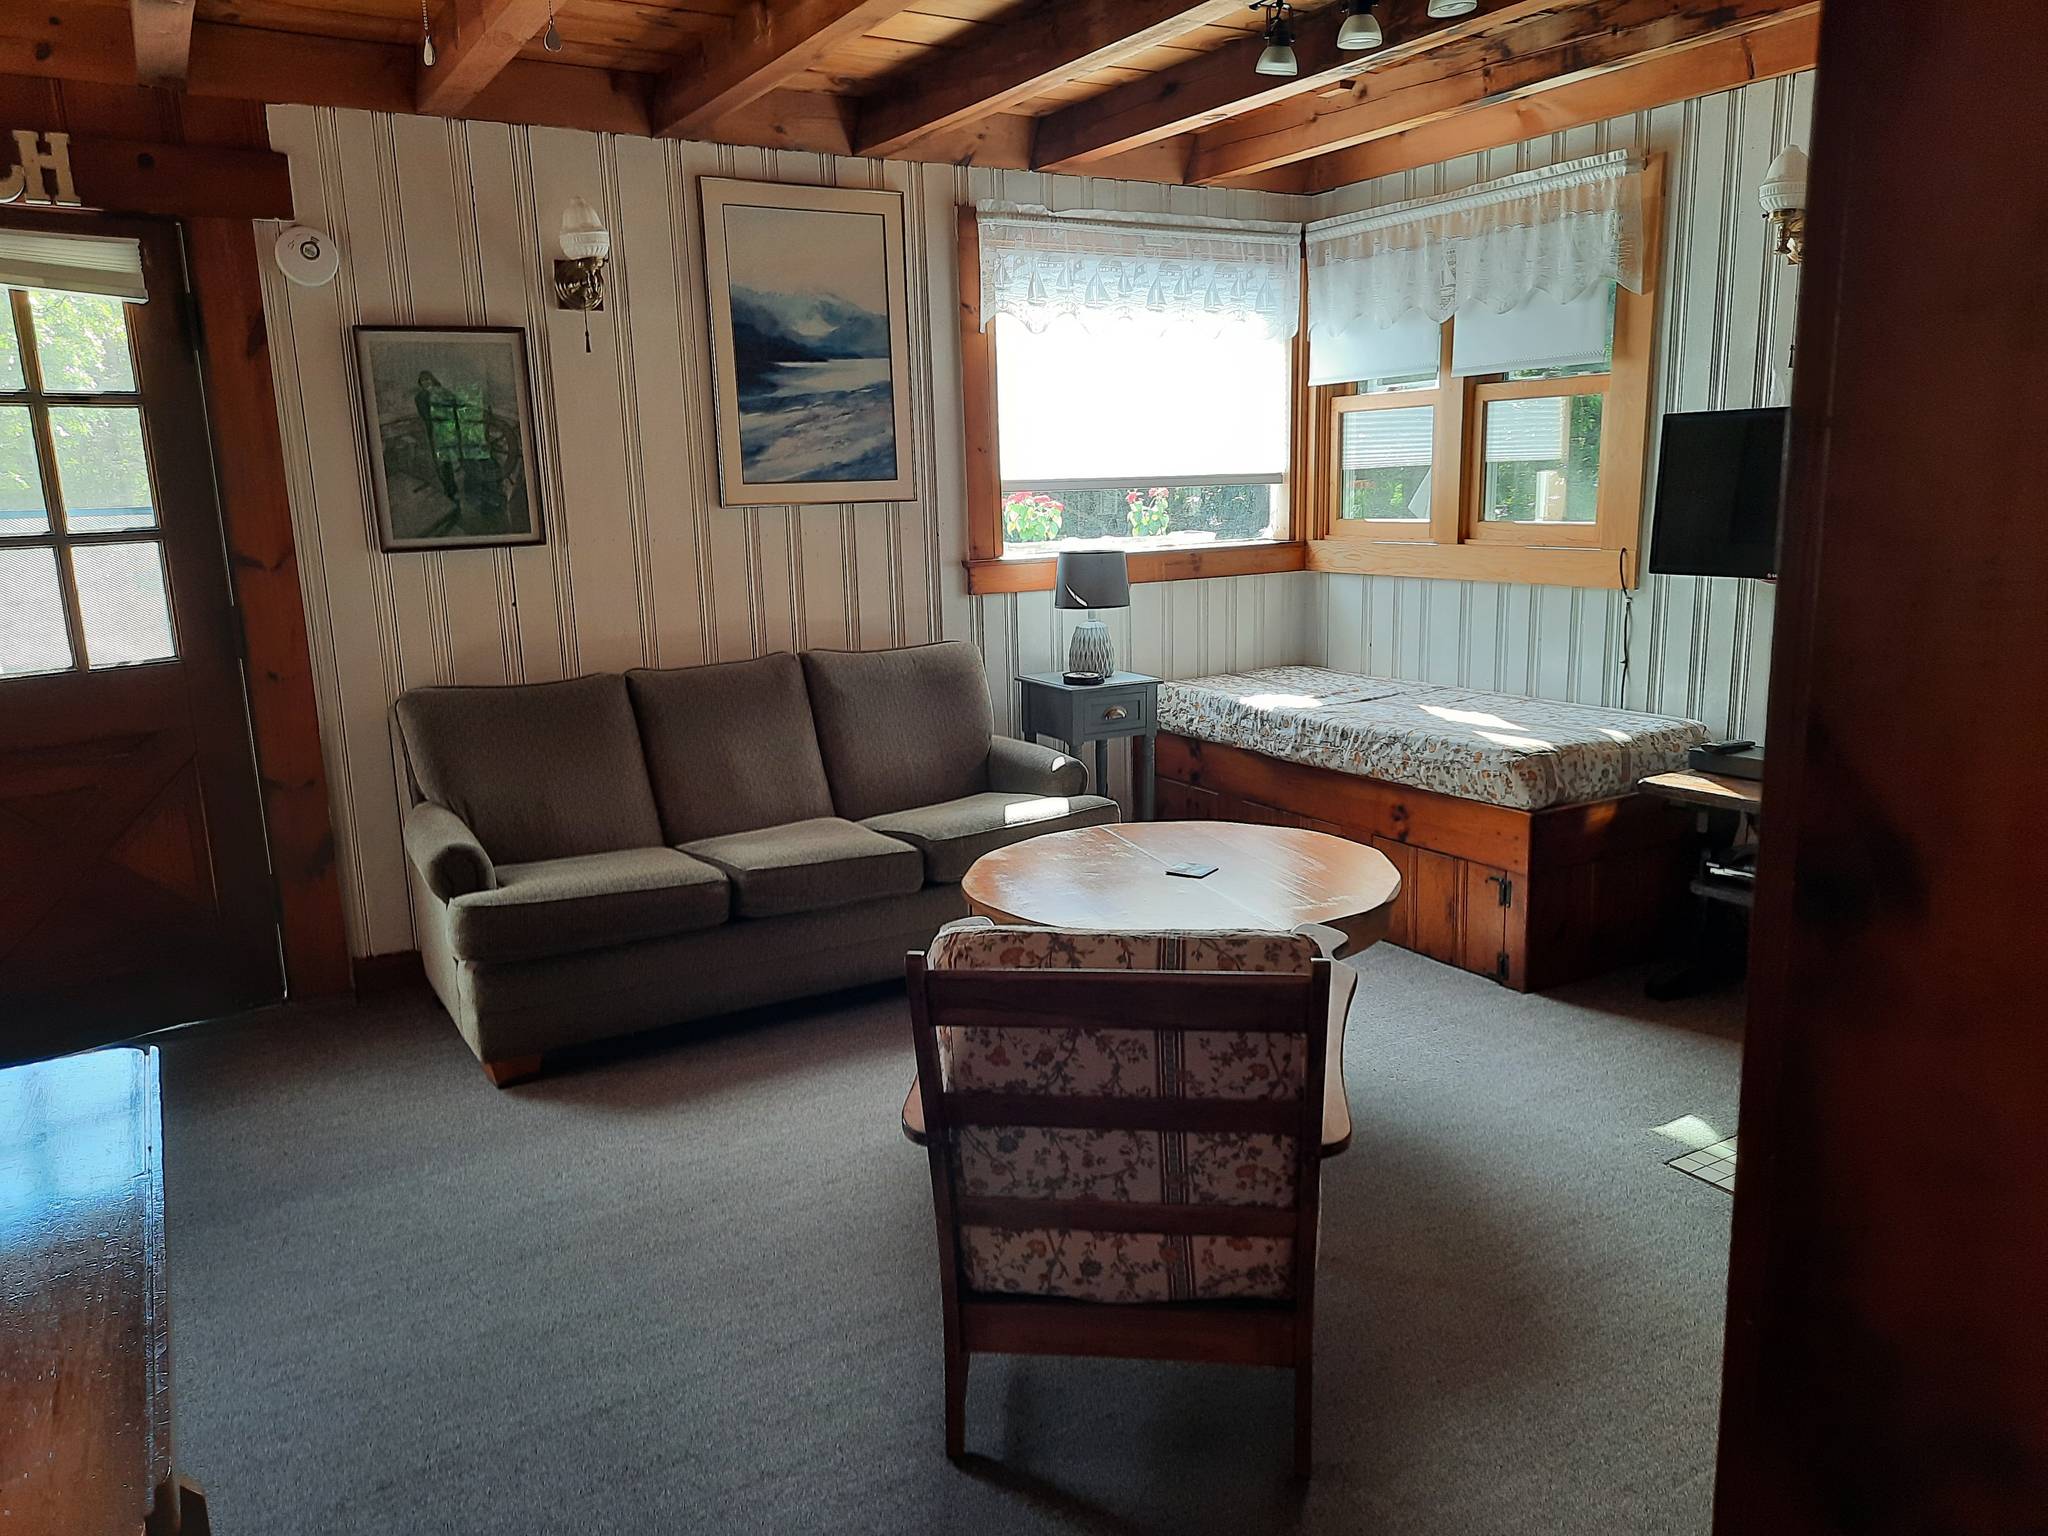 Rustic cabin decor. - Picture of The Cabin, Surrey - Tripadvisor